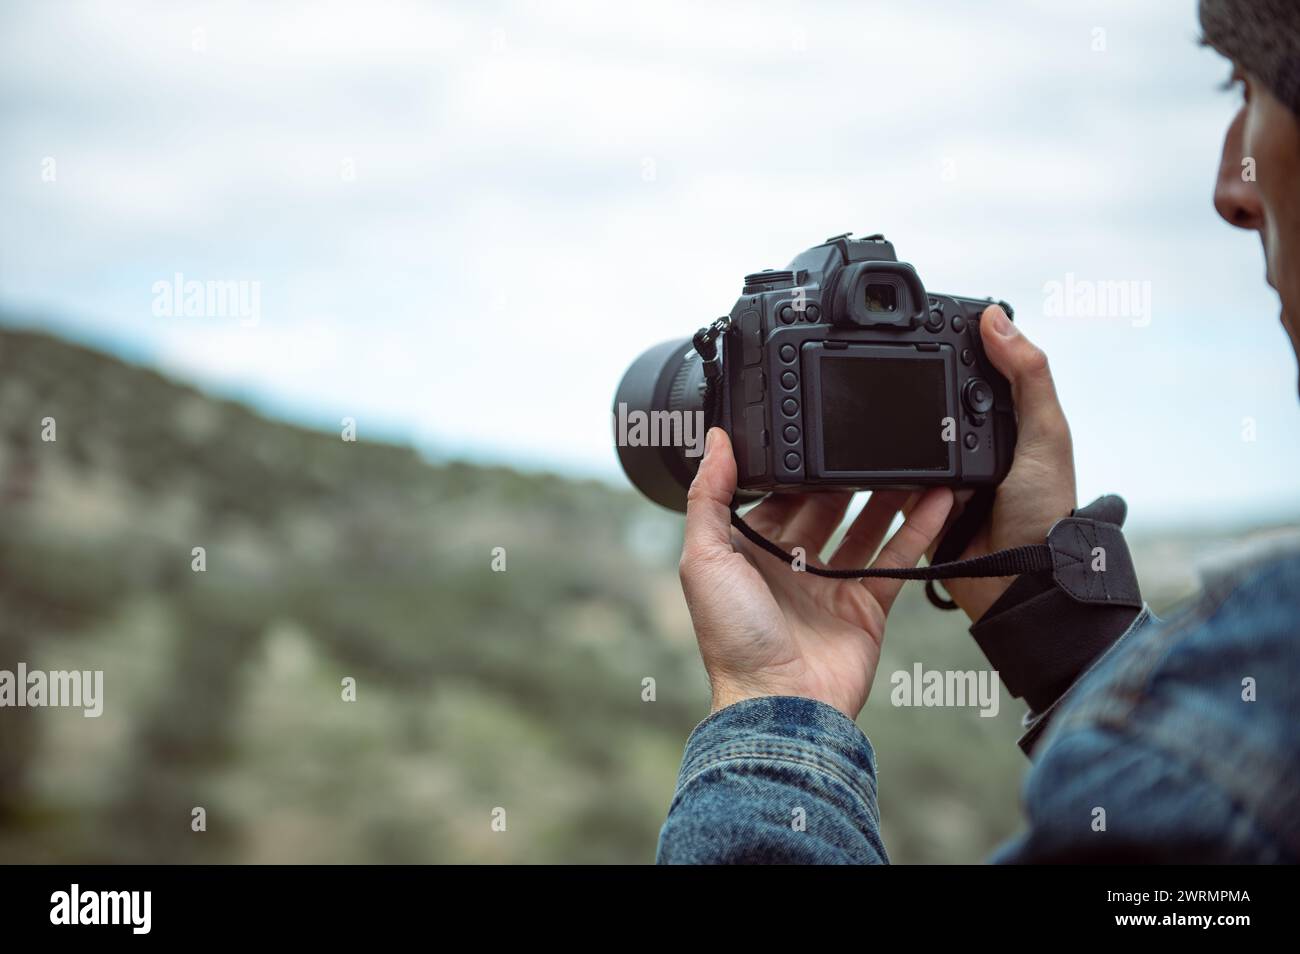 Détails sur l'appareil photo numérique dans les mains du photographe masculin capturant la beauté de la nature, photographiant les montagnes. Photographe de voyage prenant pi Banque D'Images